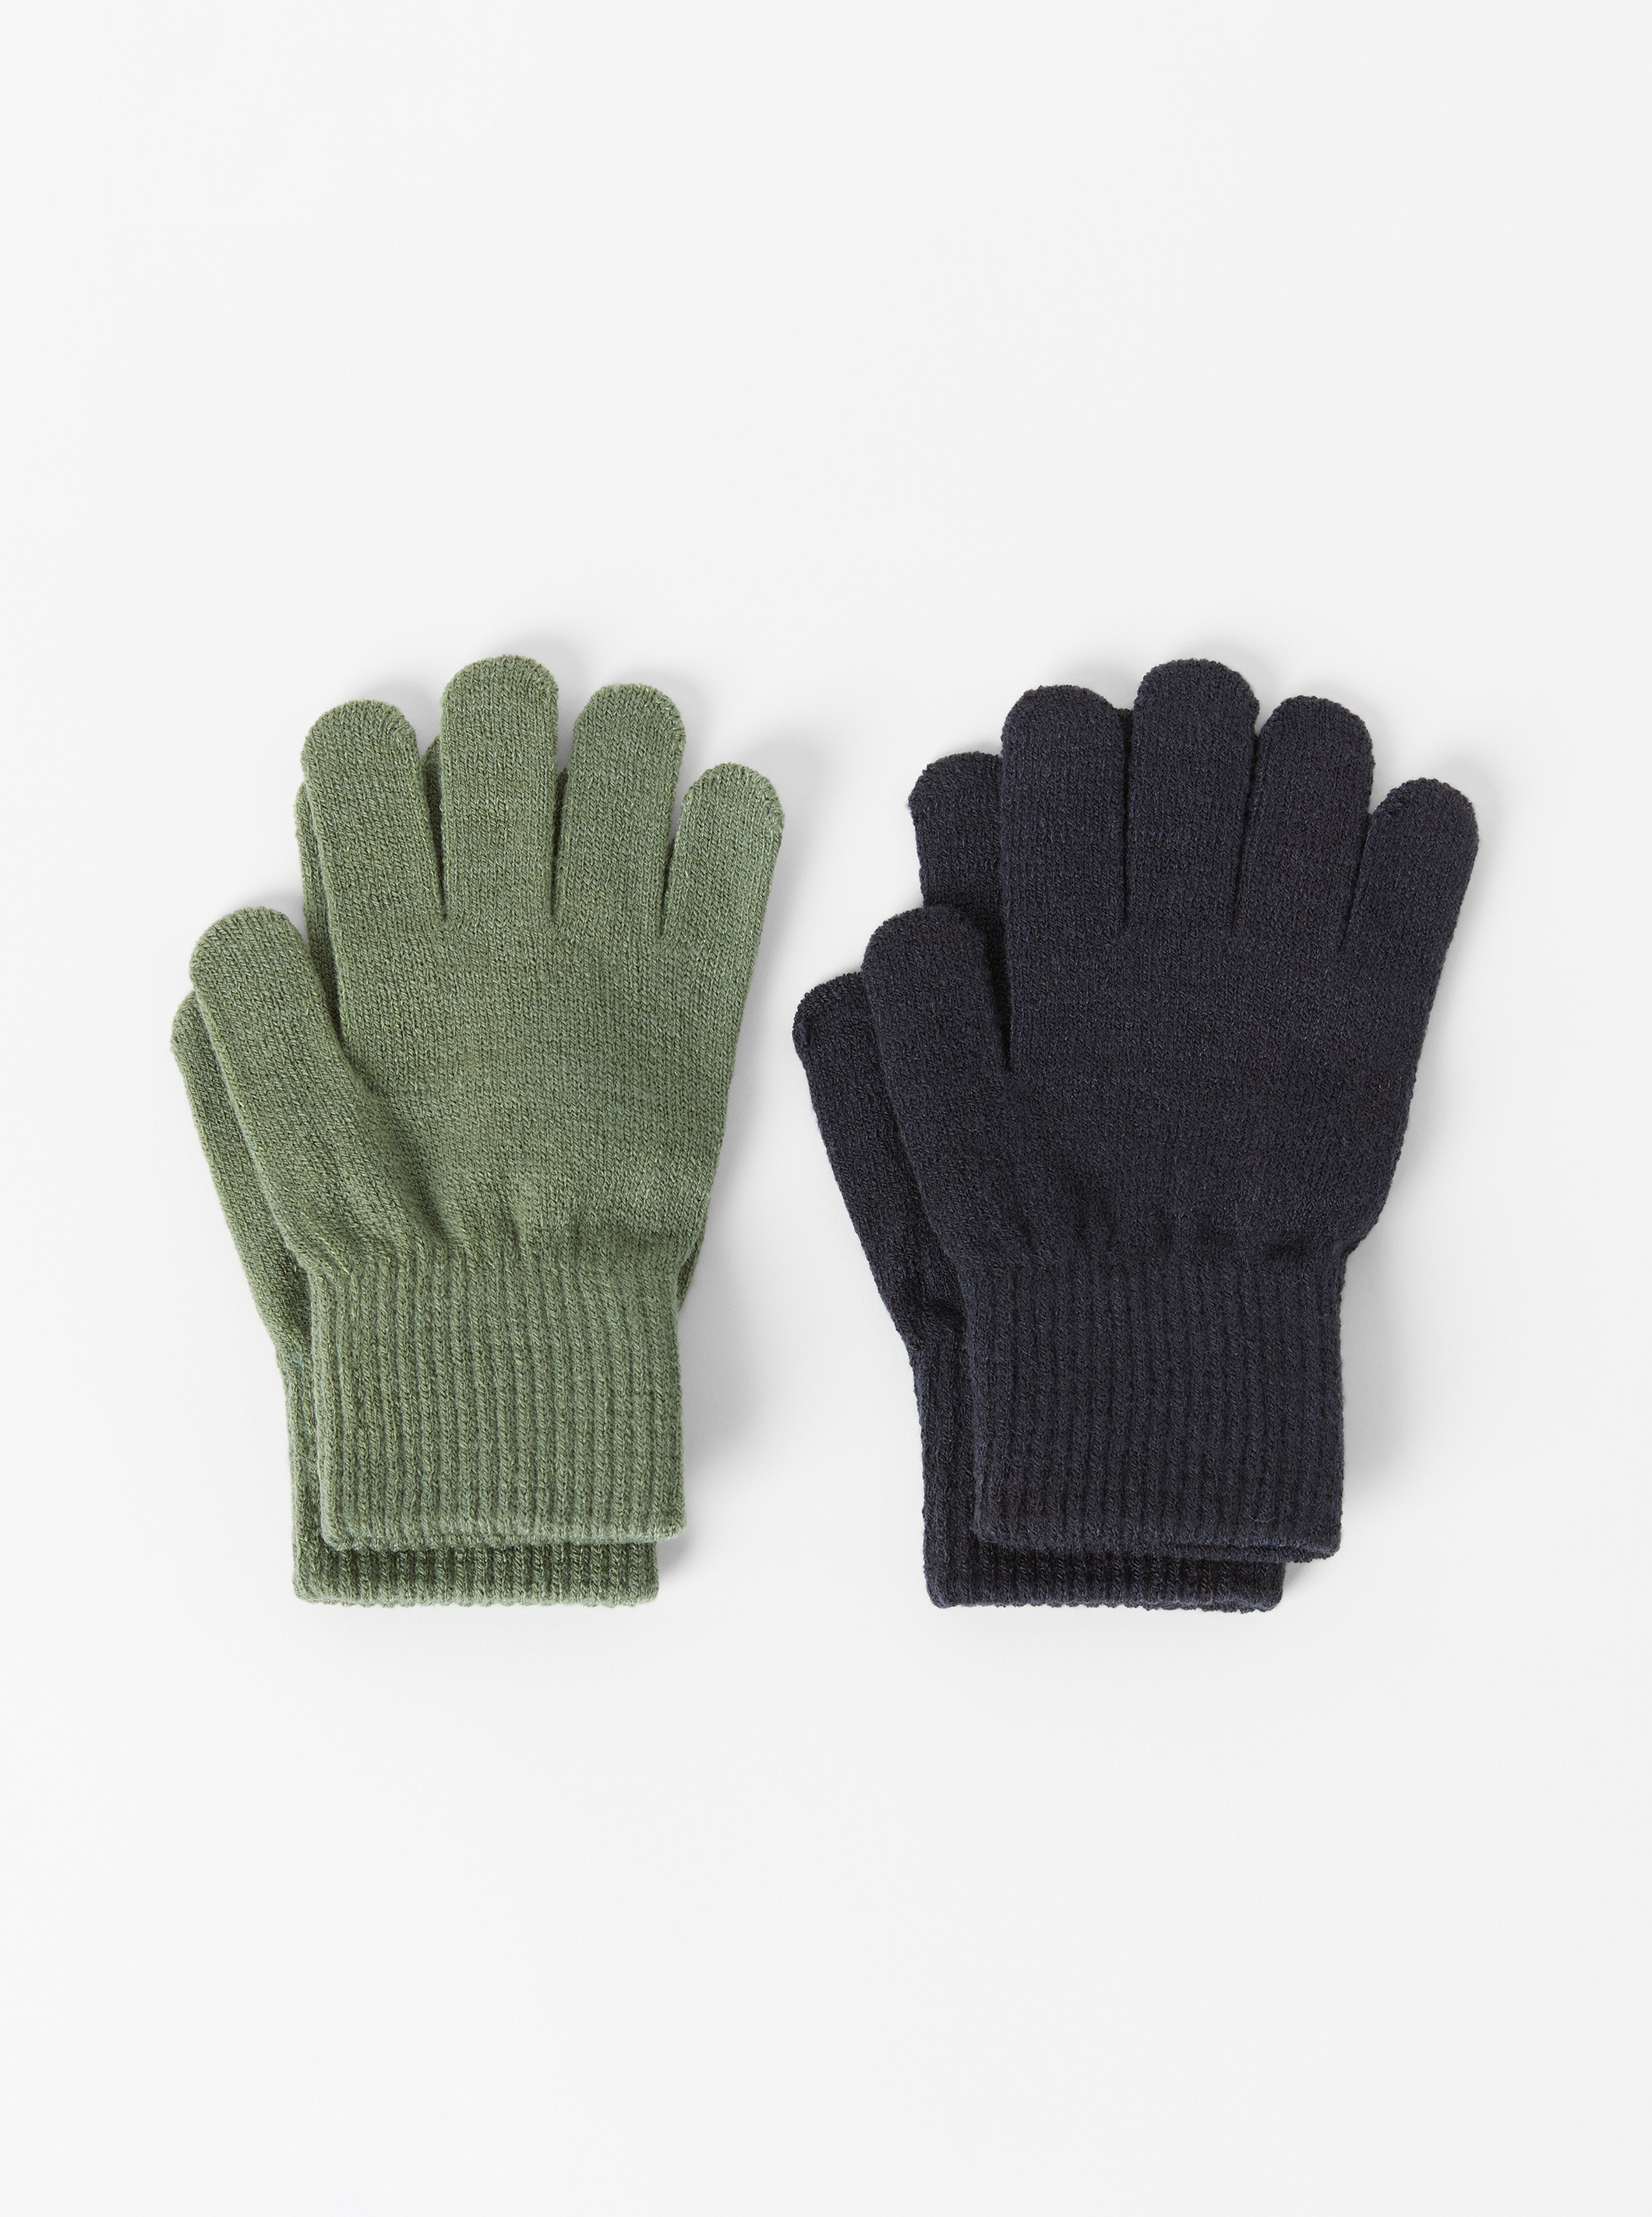 SINGOing Unisex-Kinder Handschuhe mit Fleece-Futter Herbst und Winter Baby Warme Handschuhe Kind Gestrickte Fäustlinge,1-3 Jahre alt 